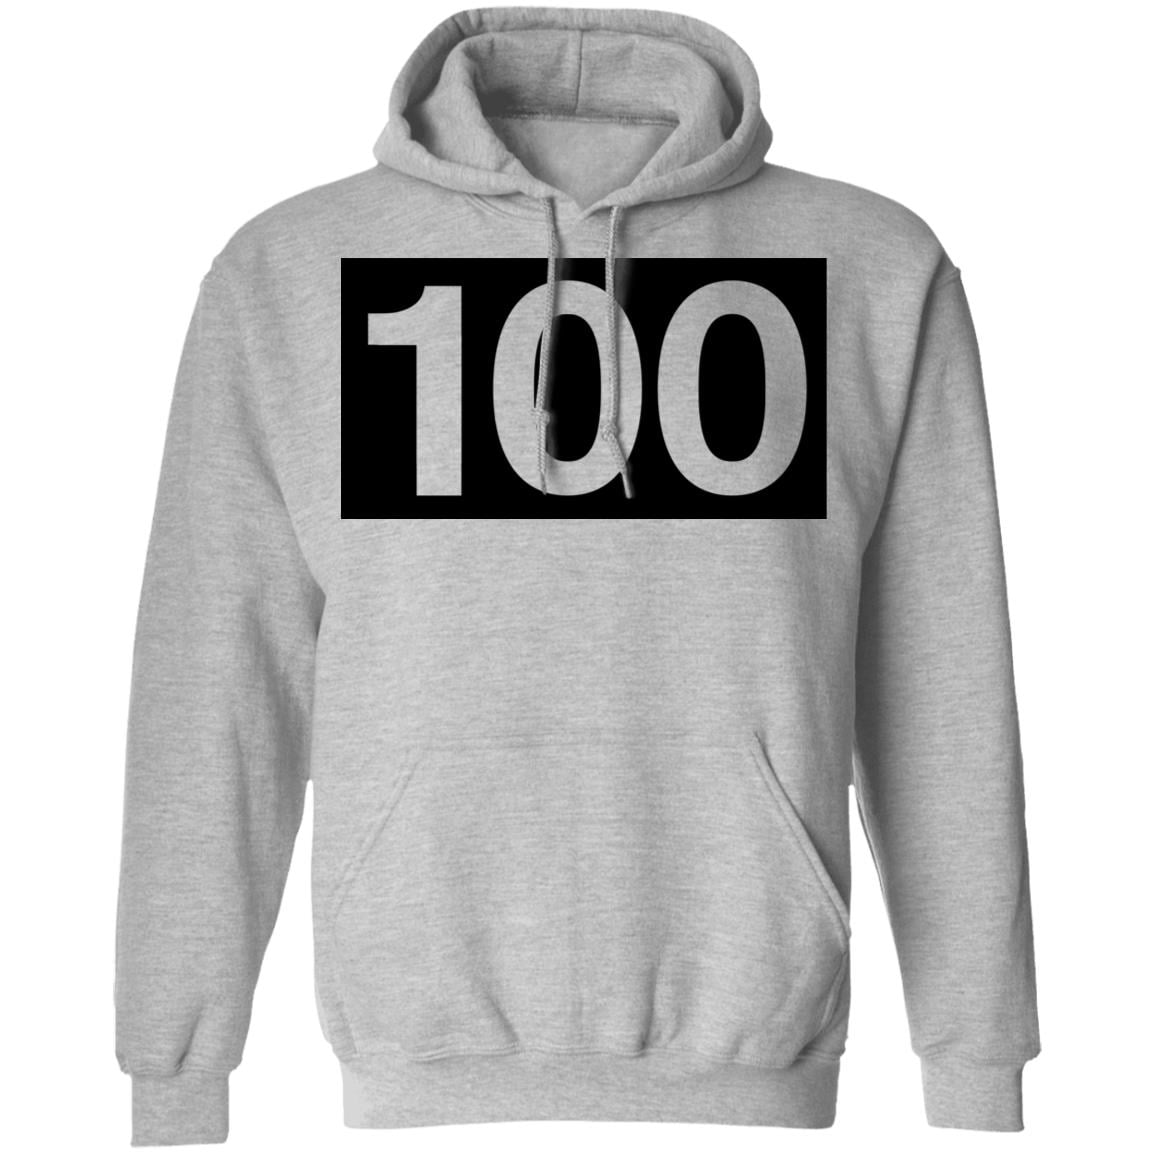 100 Thieves Numbers Hoodie Grey